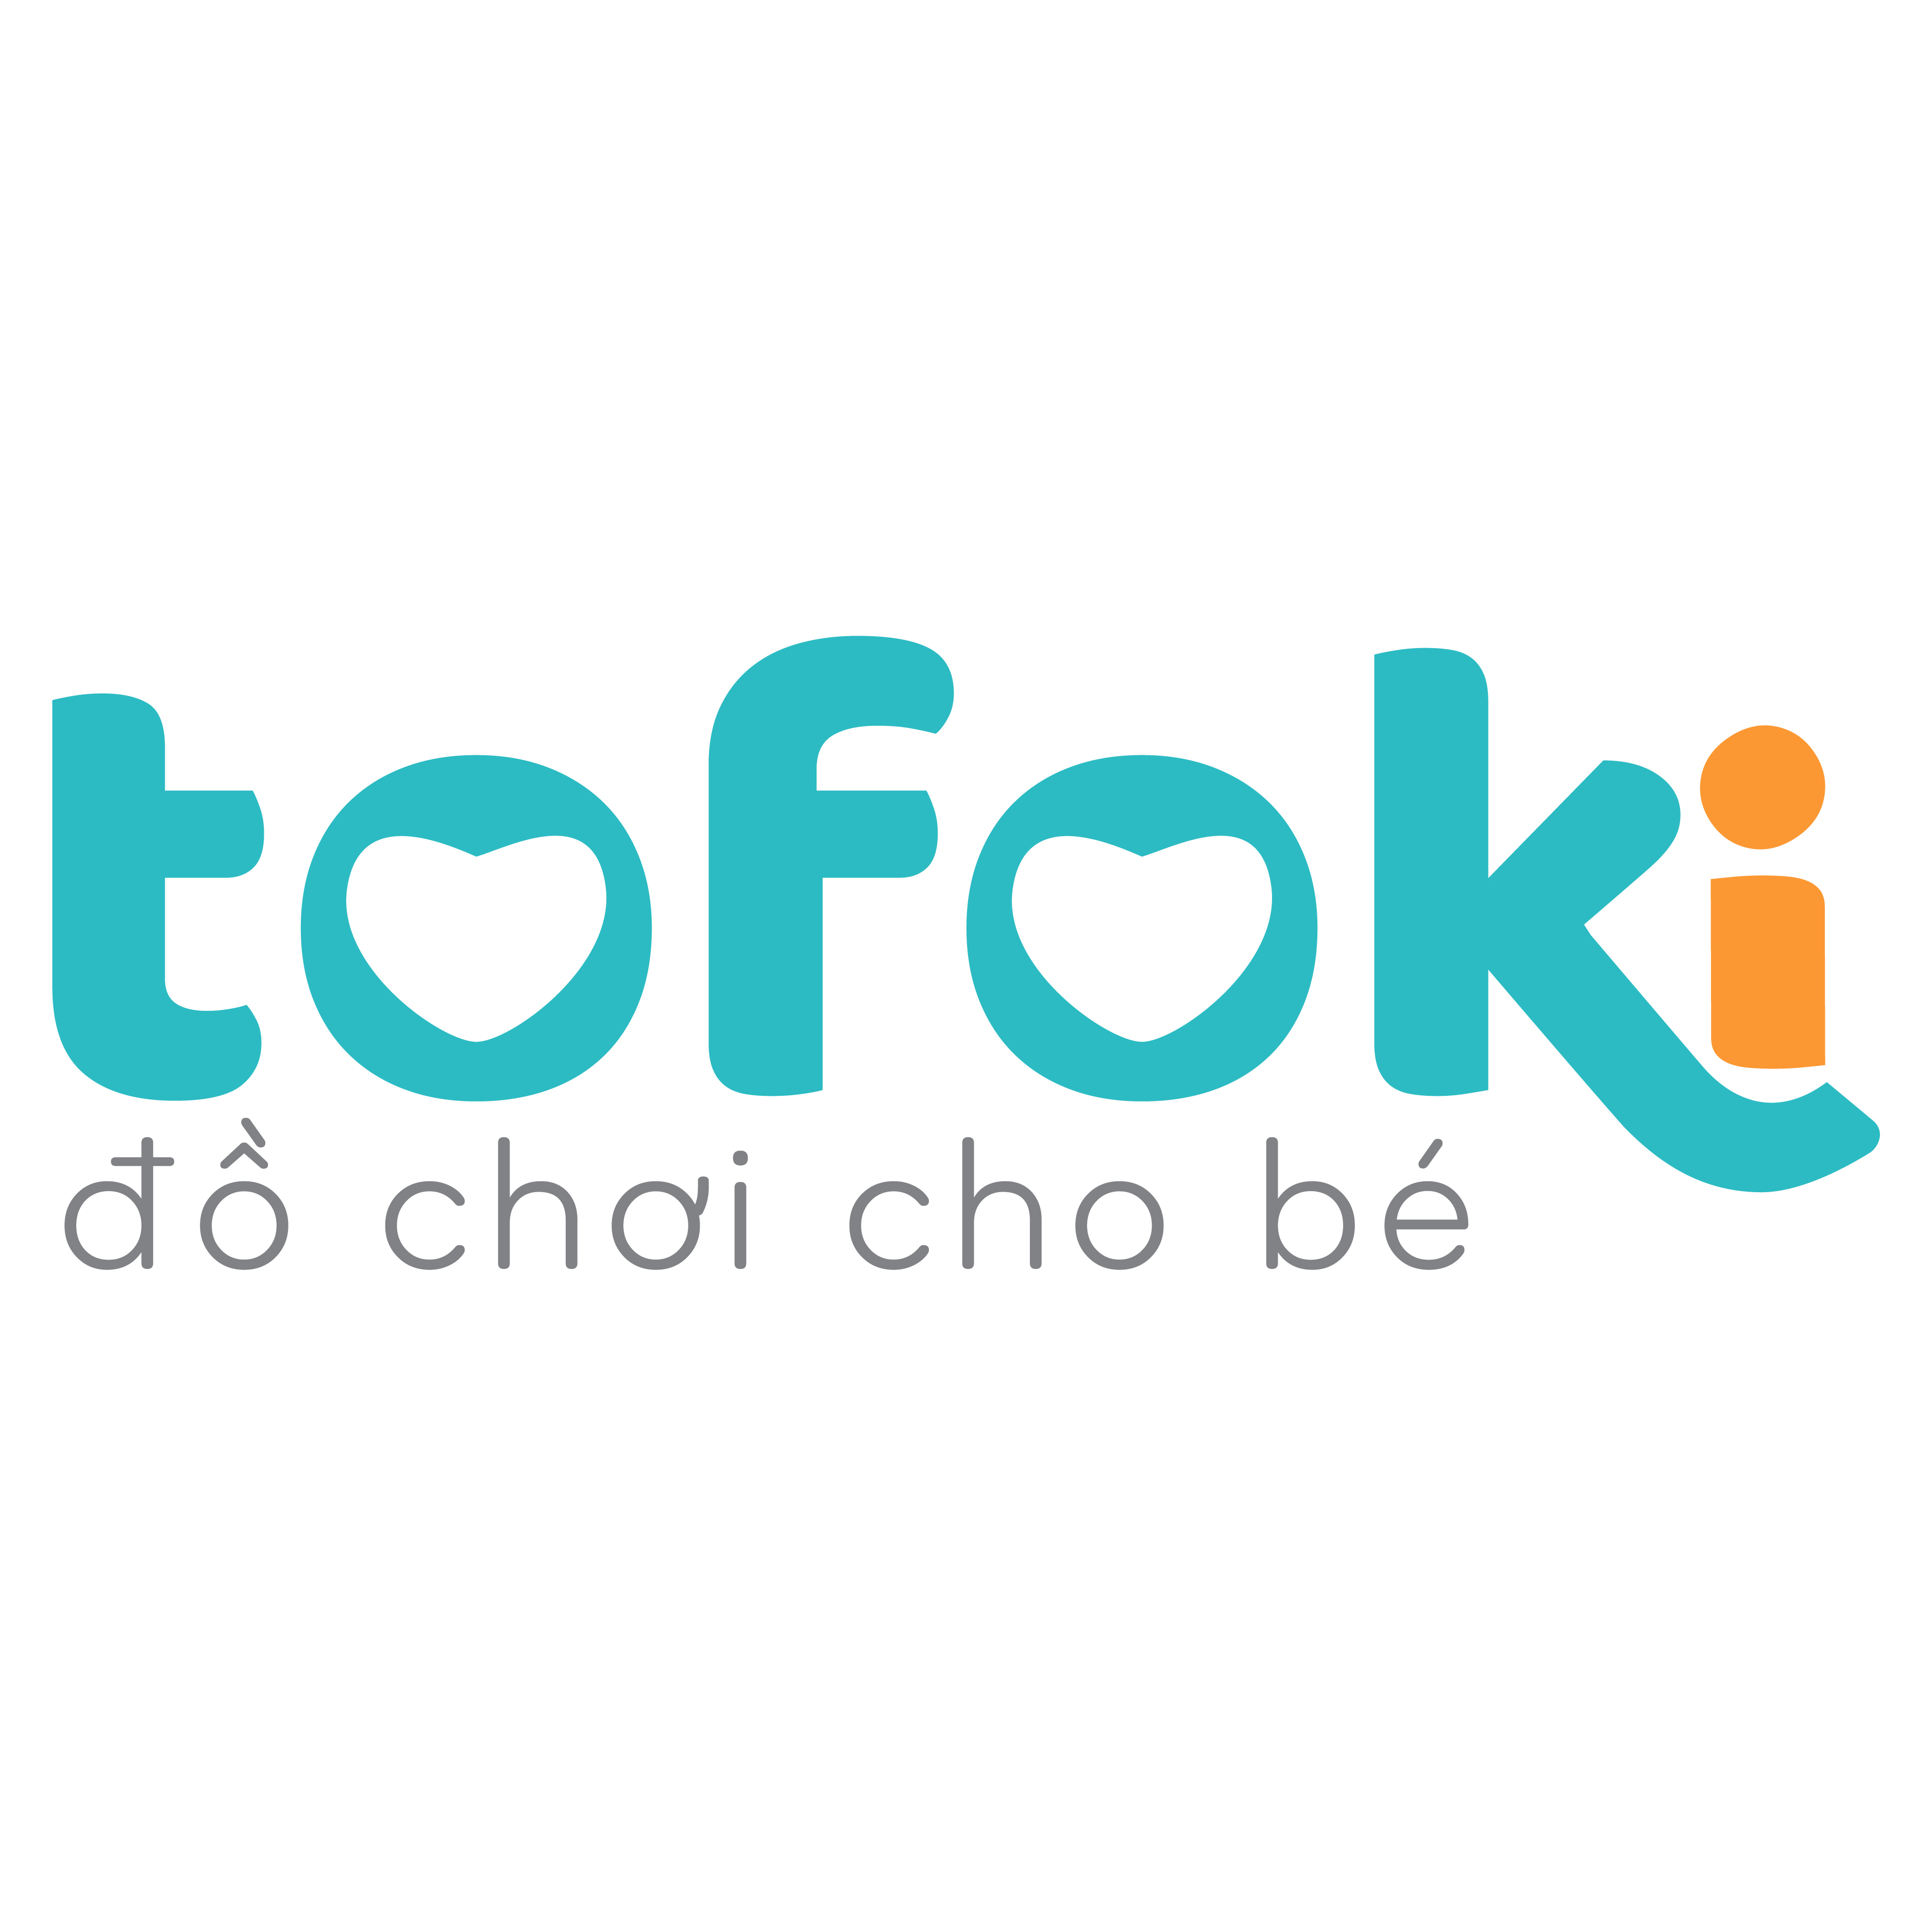 tofoki